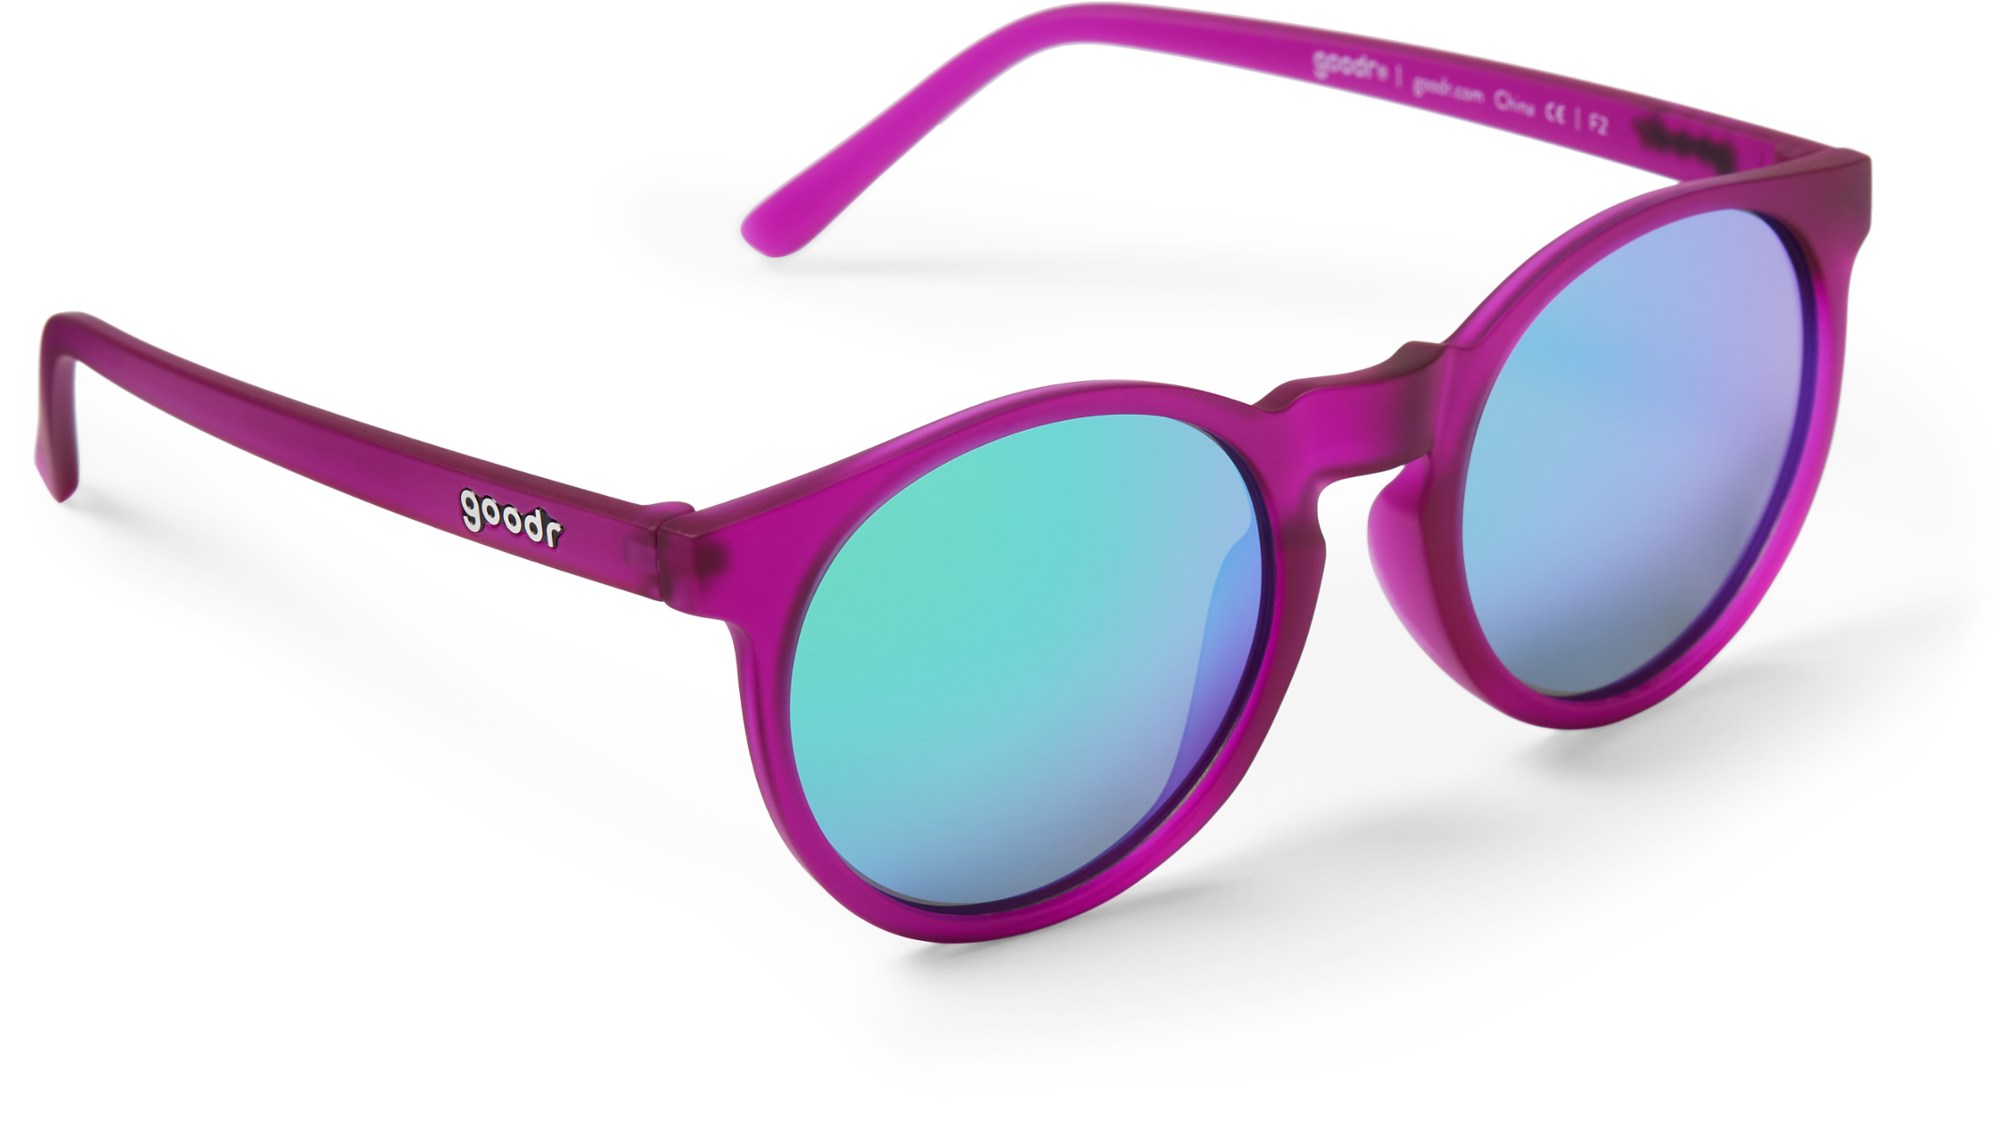 Поляризованные солнцезащитные очки Circle Gs goodr, фиолетовый